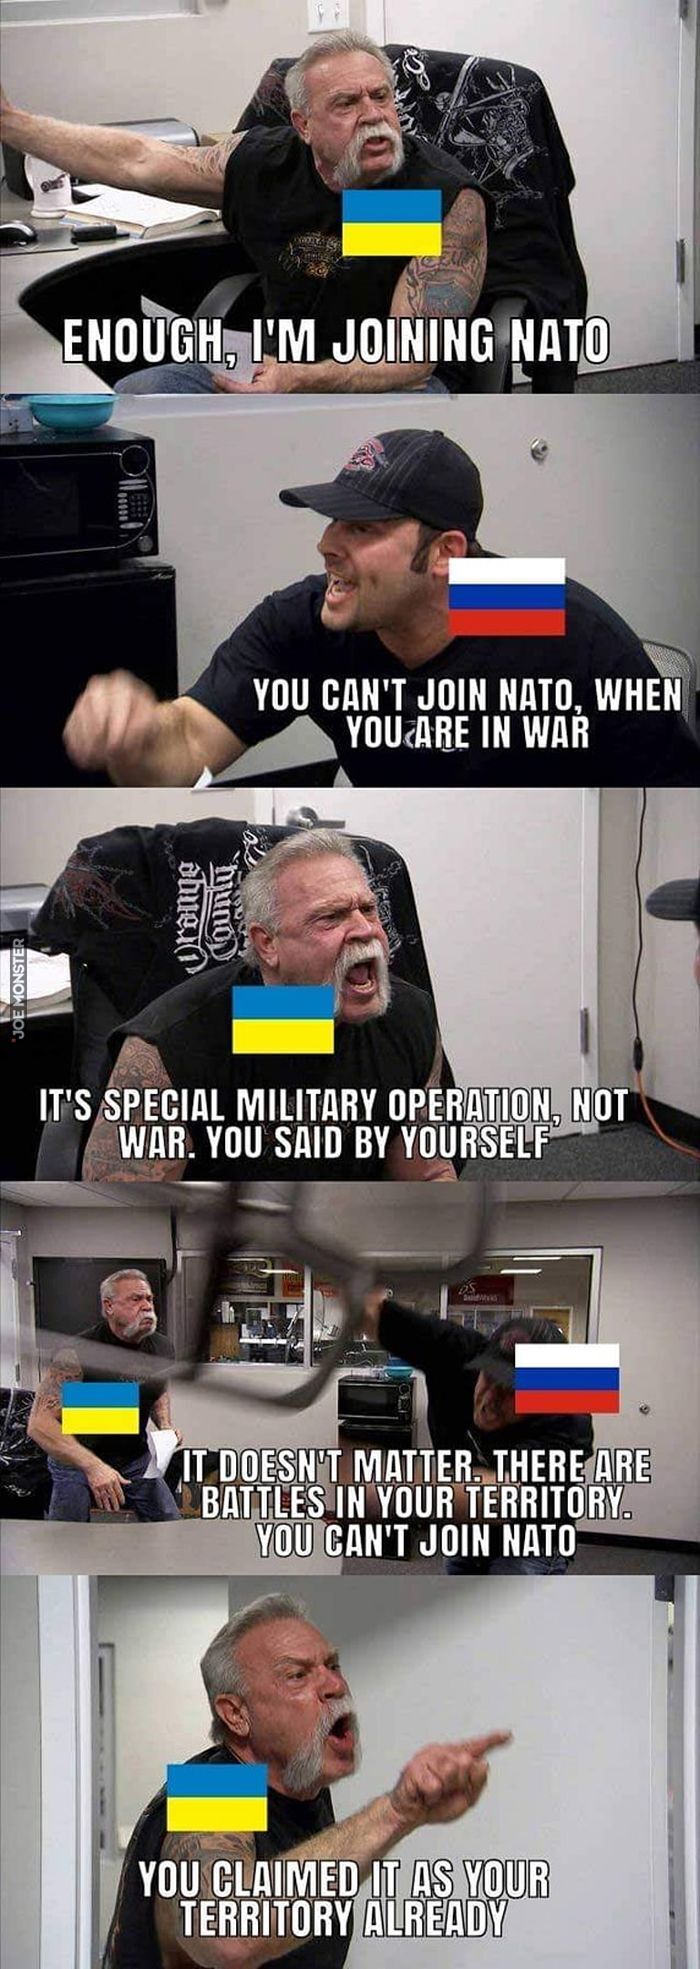 dość, wstępuję do NATO